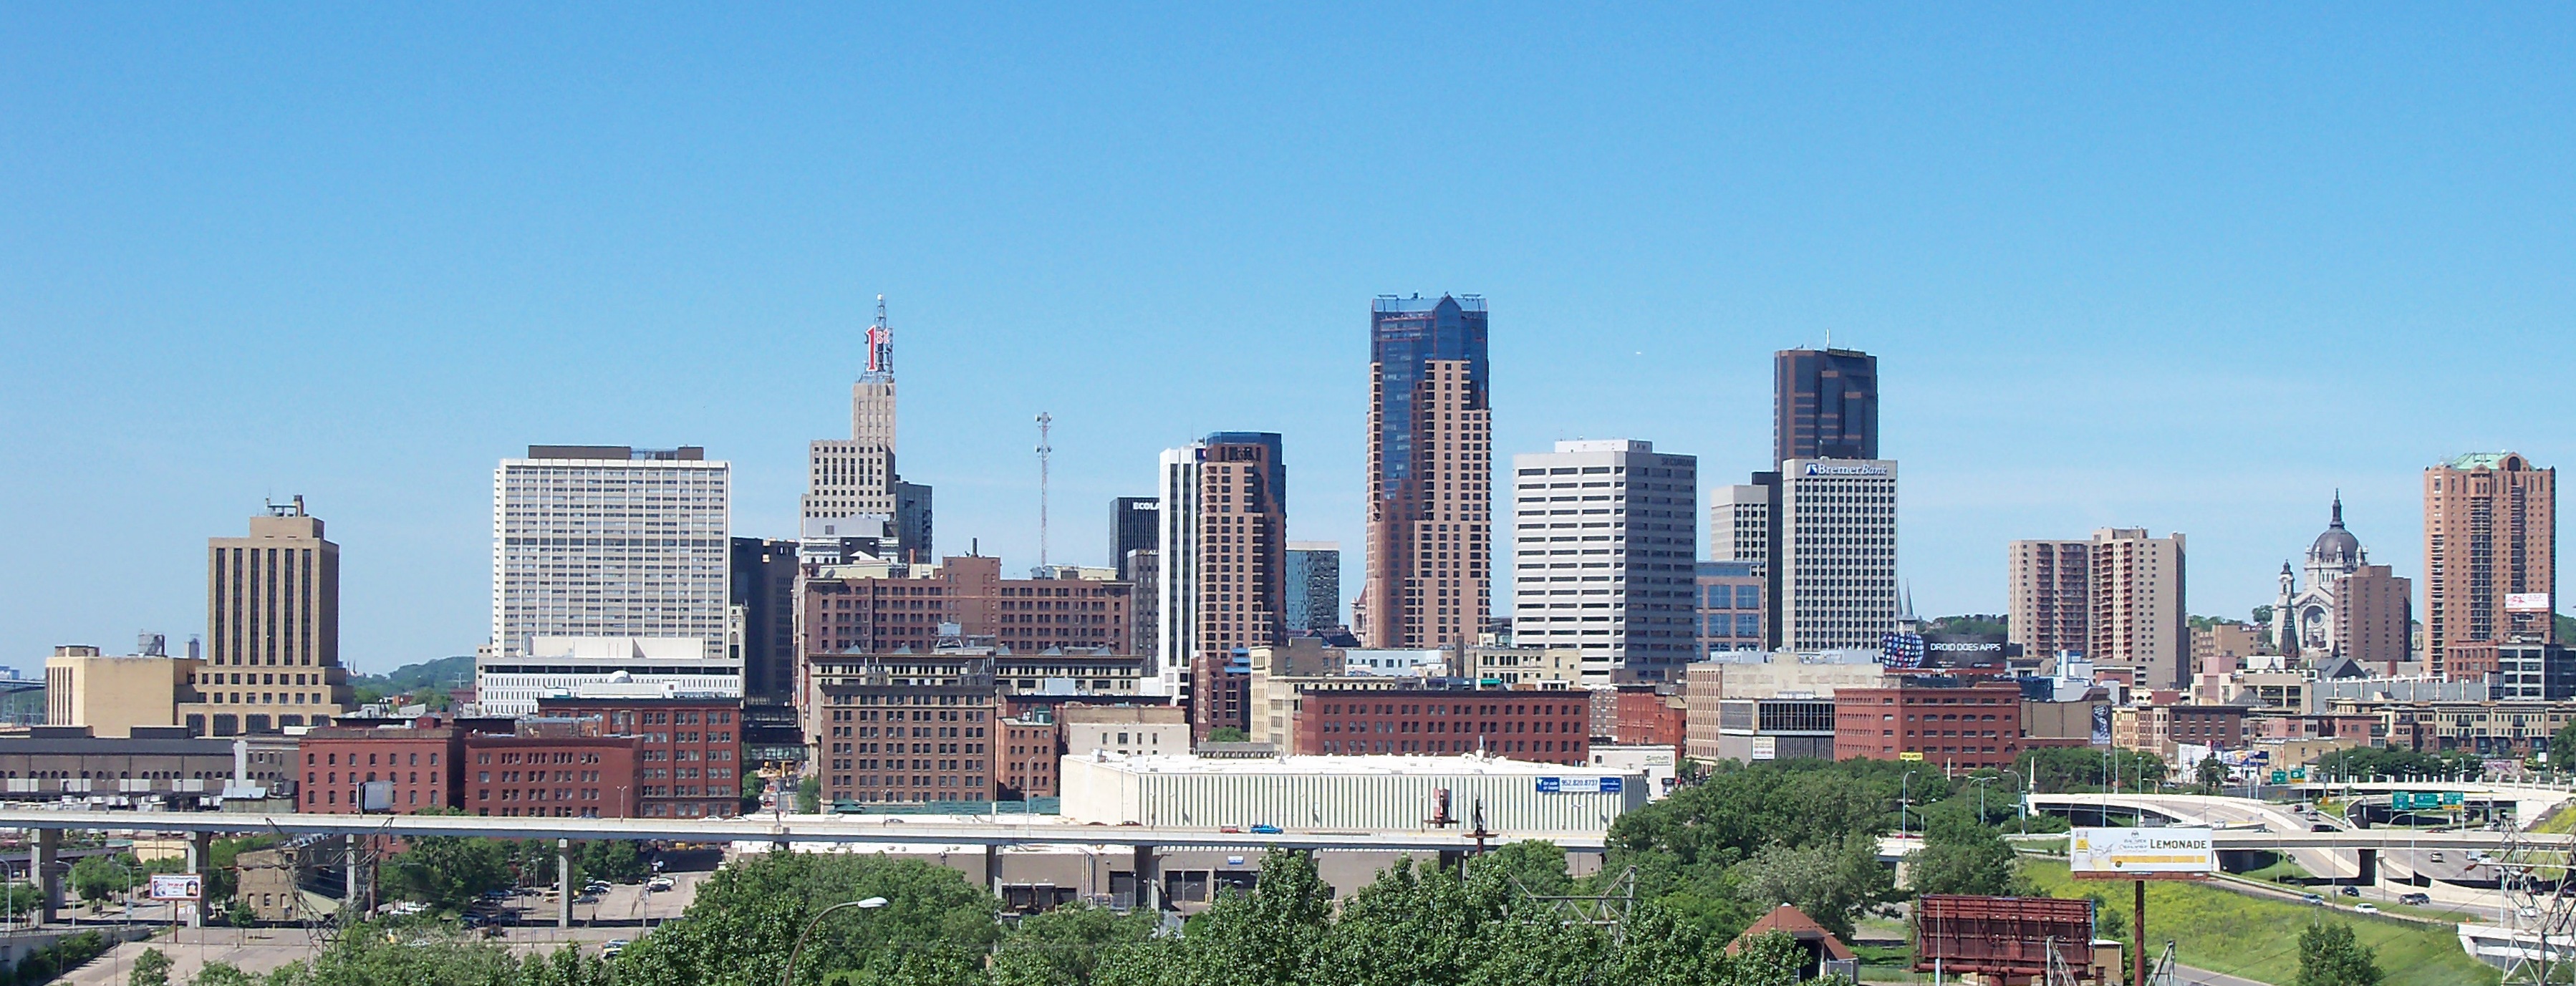 Saint Paul, Minnesota pledges to make its buildings carbon neutral by 2050